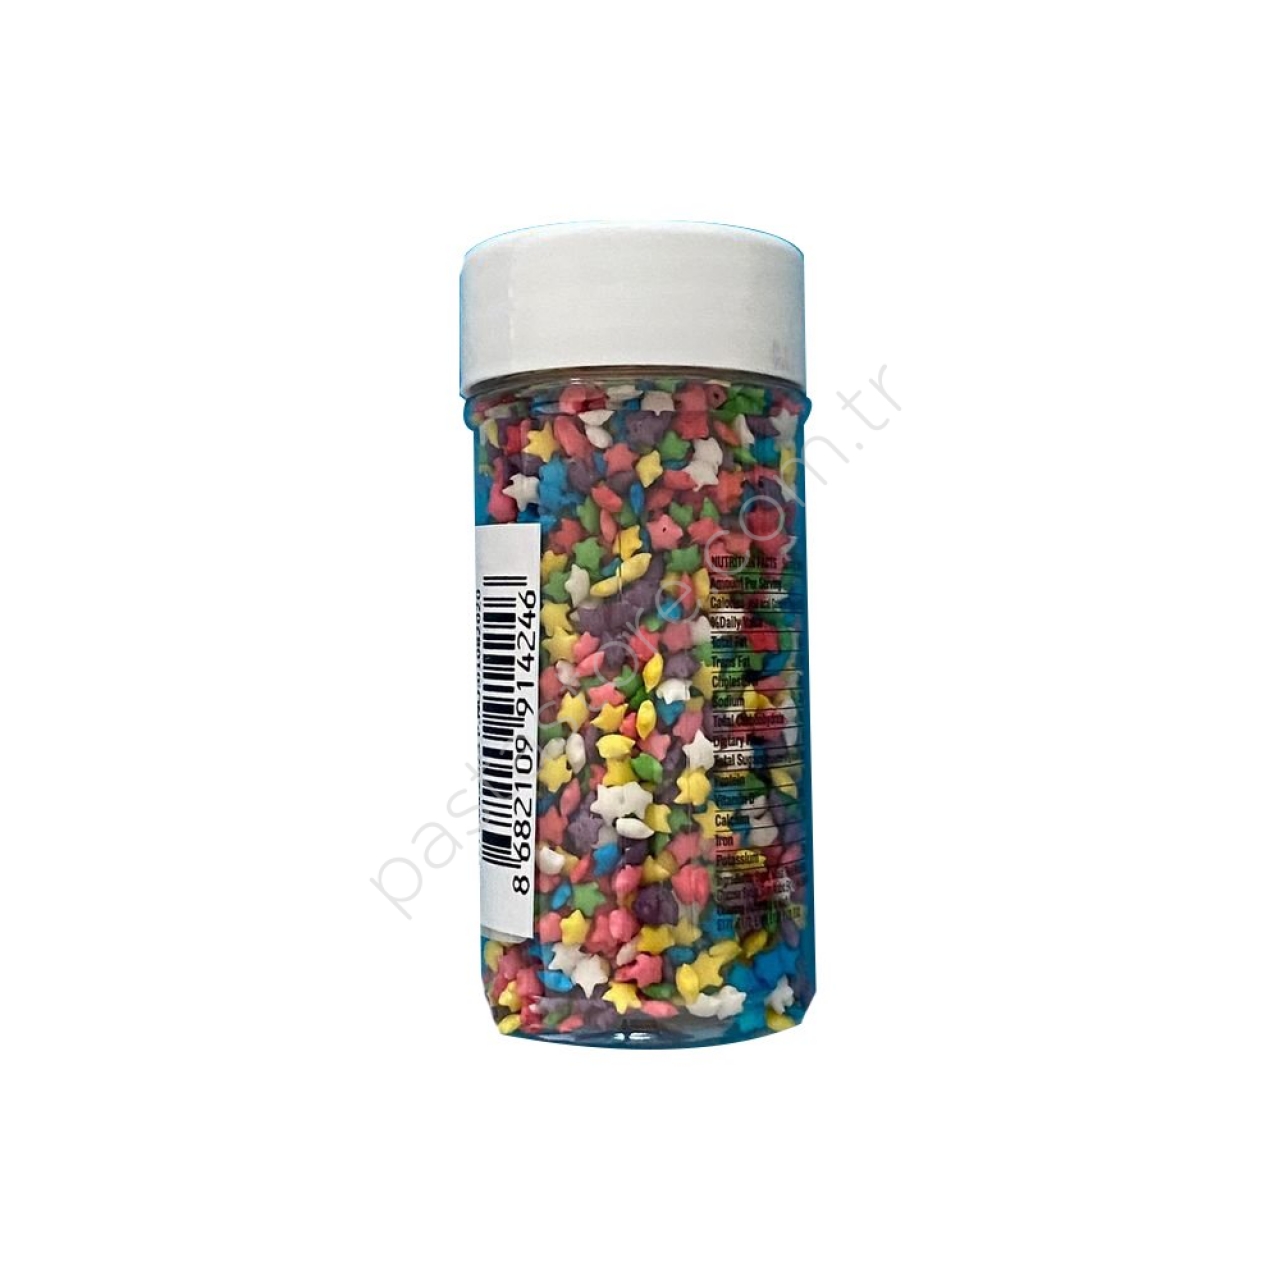 Dr Gusto Sprinkles Confeti Yıldız Mix